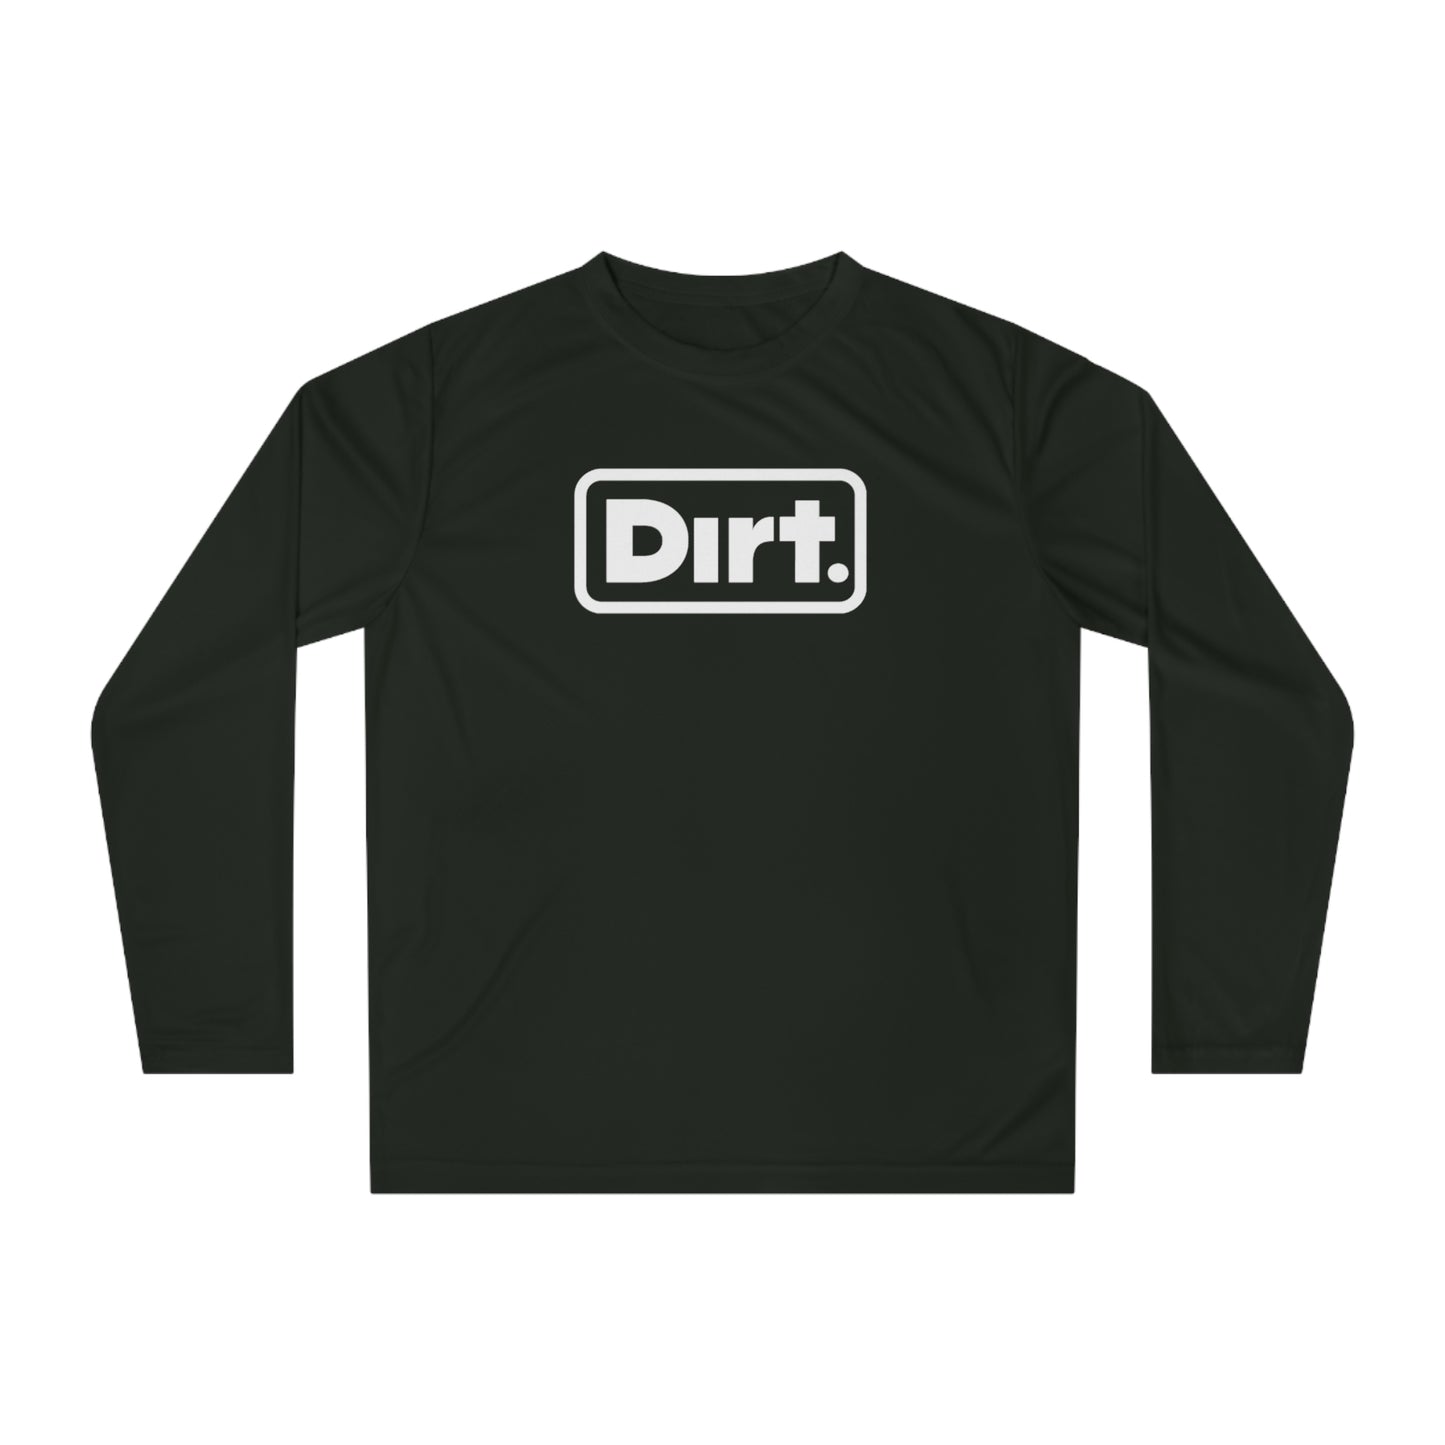 Dirt. Shirt - Long Sleeve